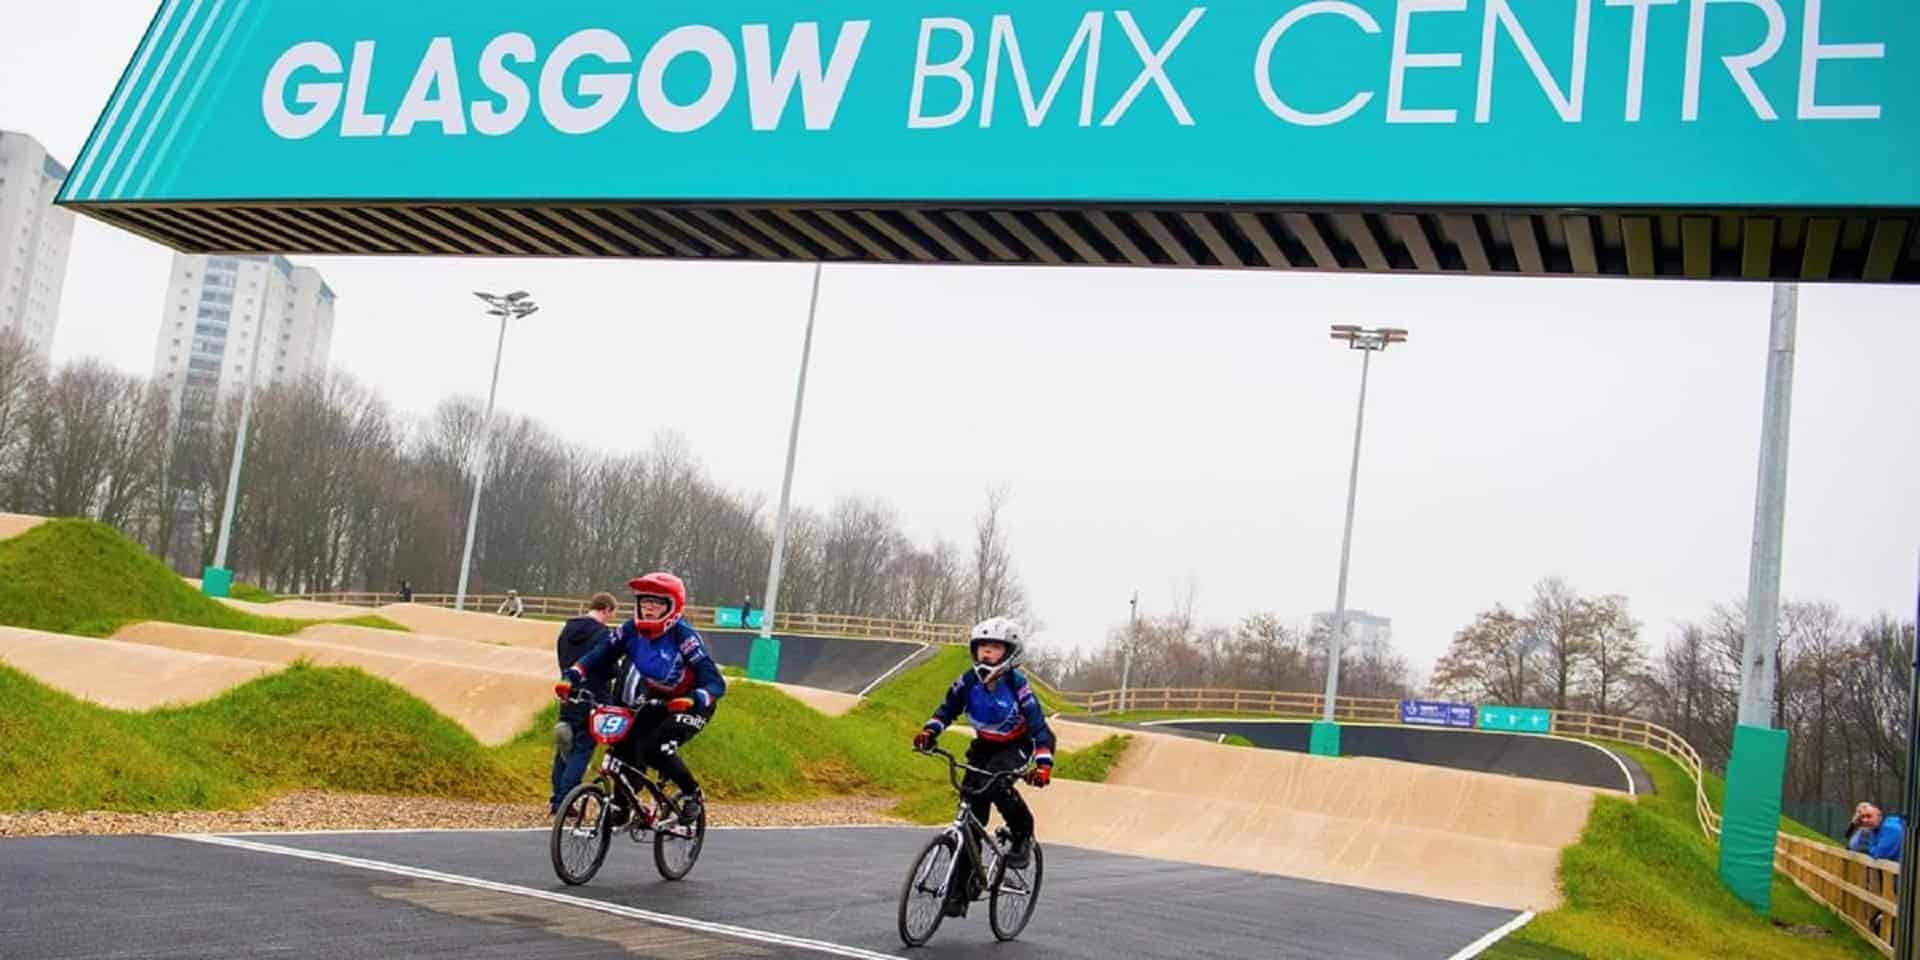 Glasgow BMX Centre in UK